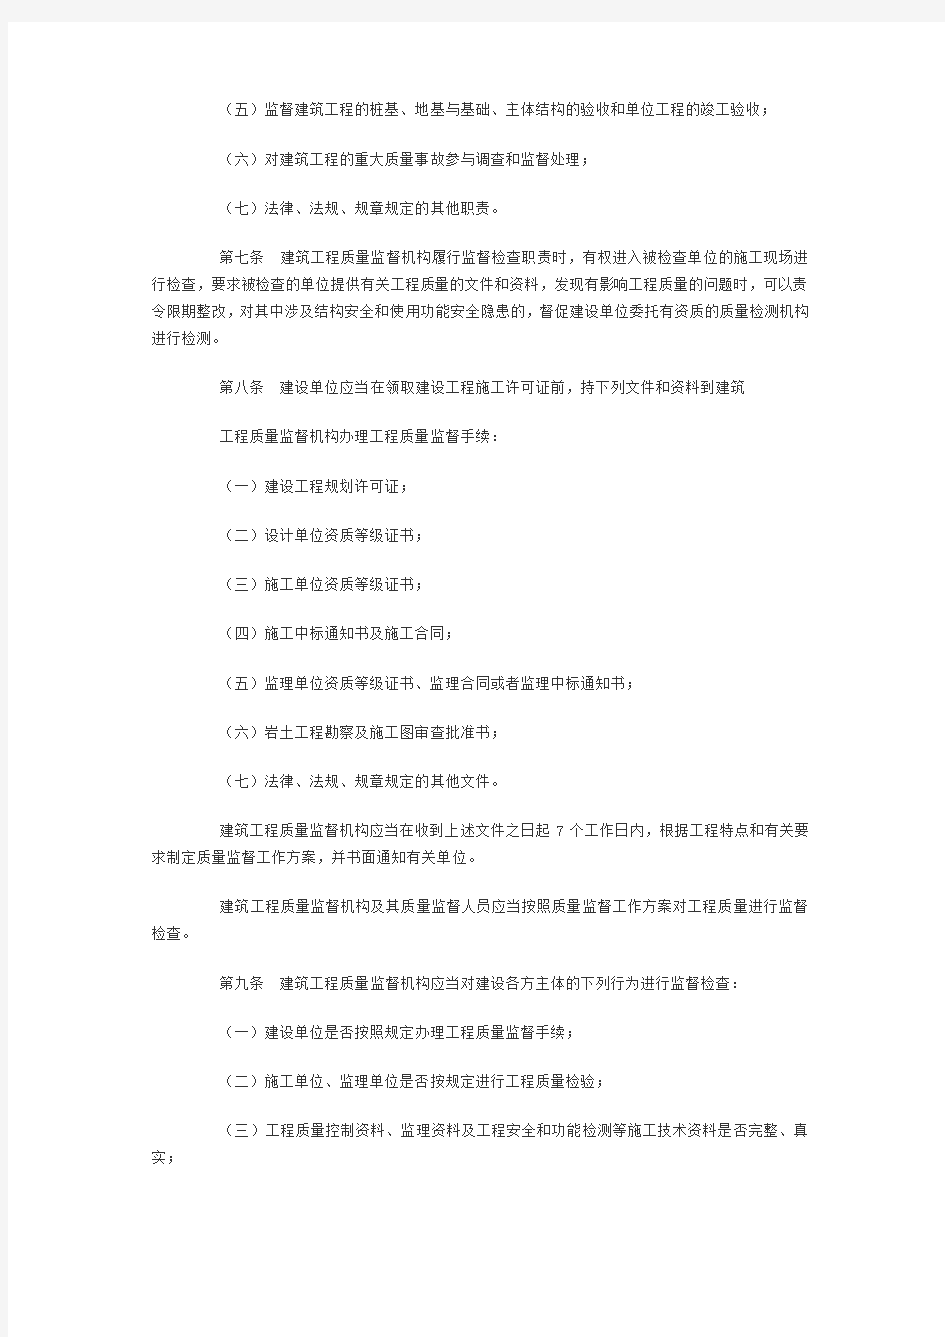 南京市建筑工程质量监督管理规定